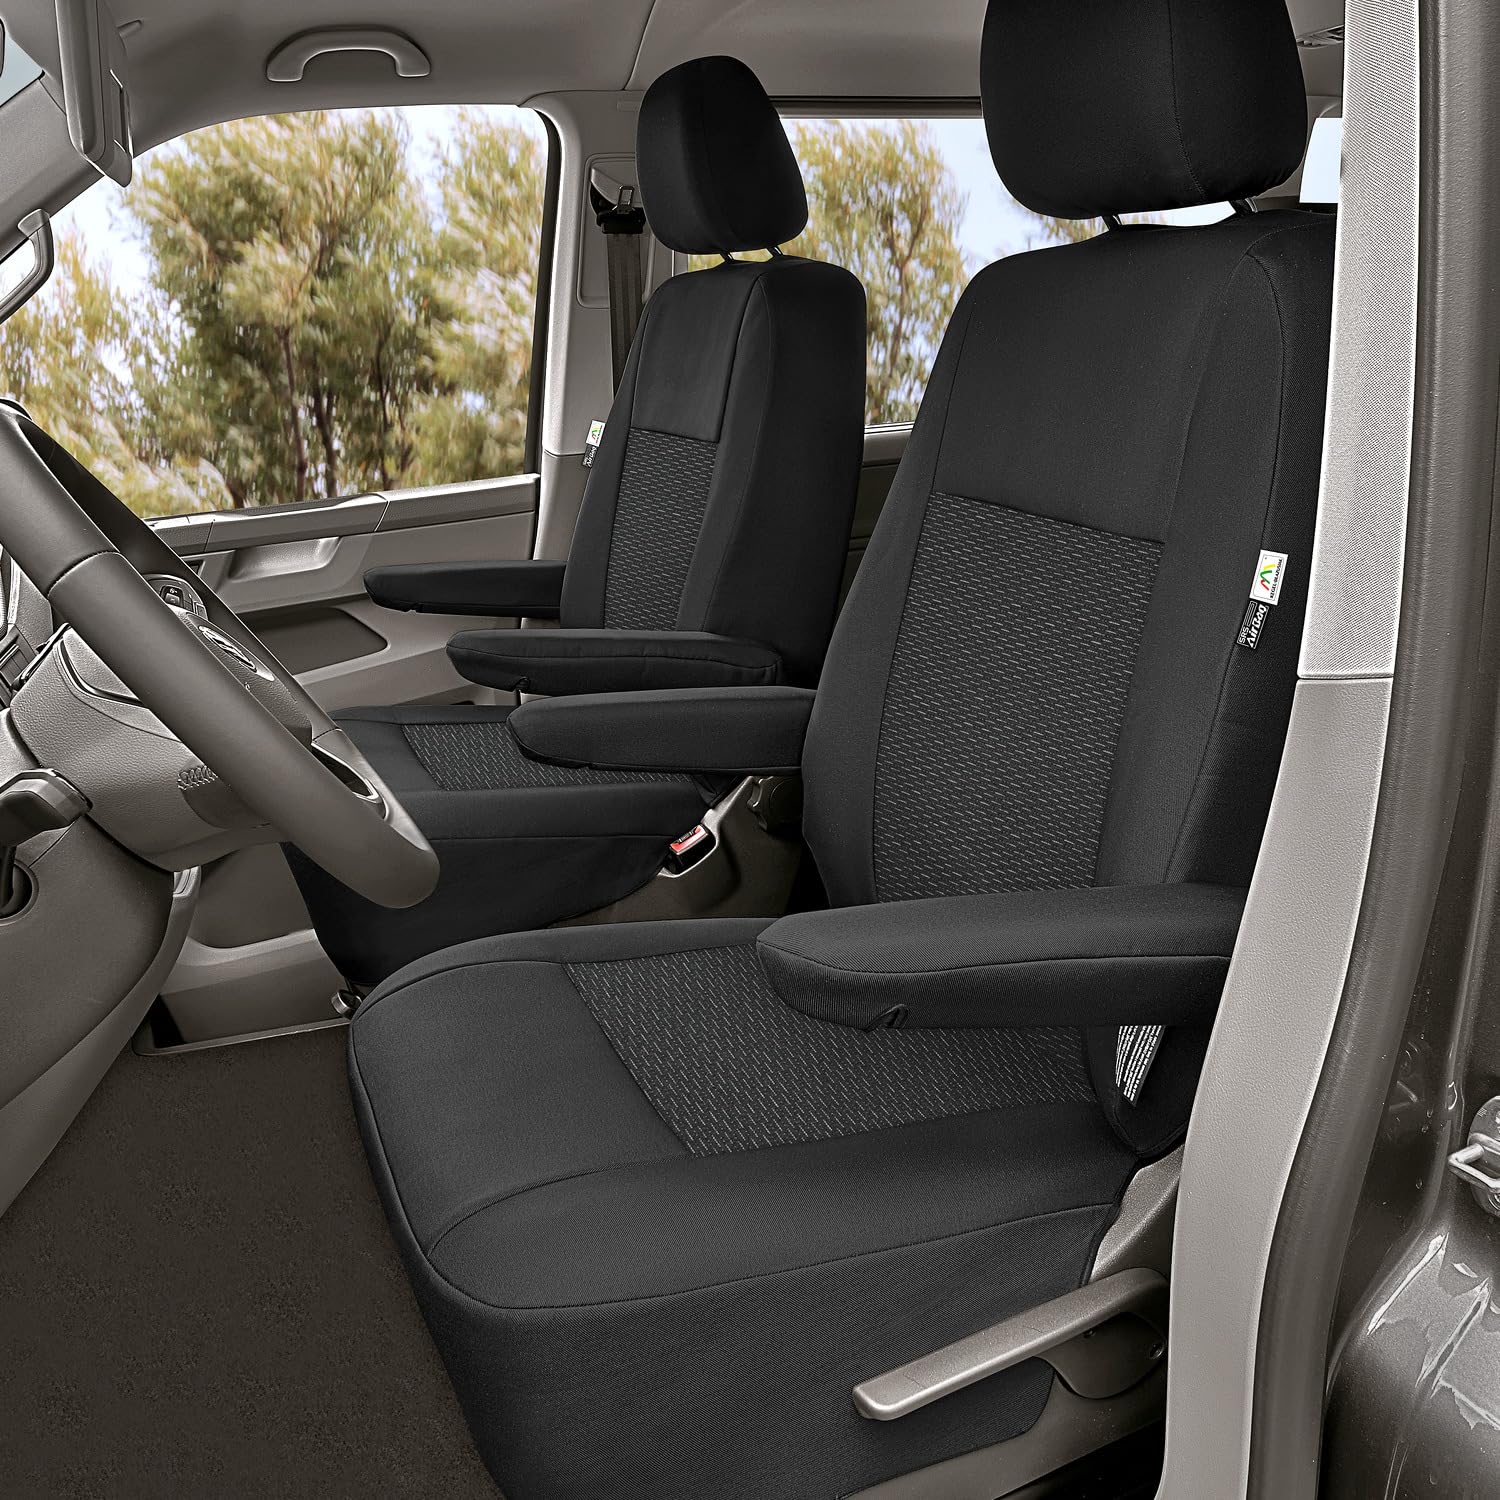 Maßgeschneiderte Front Sitzbezüge Fahrersitzbezug Beifahrersitzbezug kompatibel mit VW T5 Transporter ab 2003-2015 und kompatibel mit VW T6 Transporter ab 2015 von pitshop24